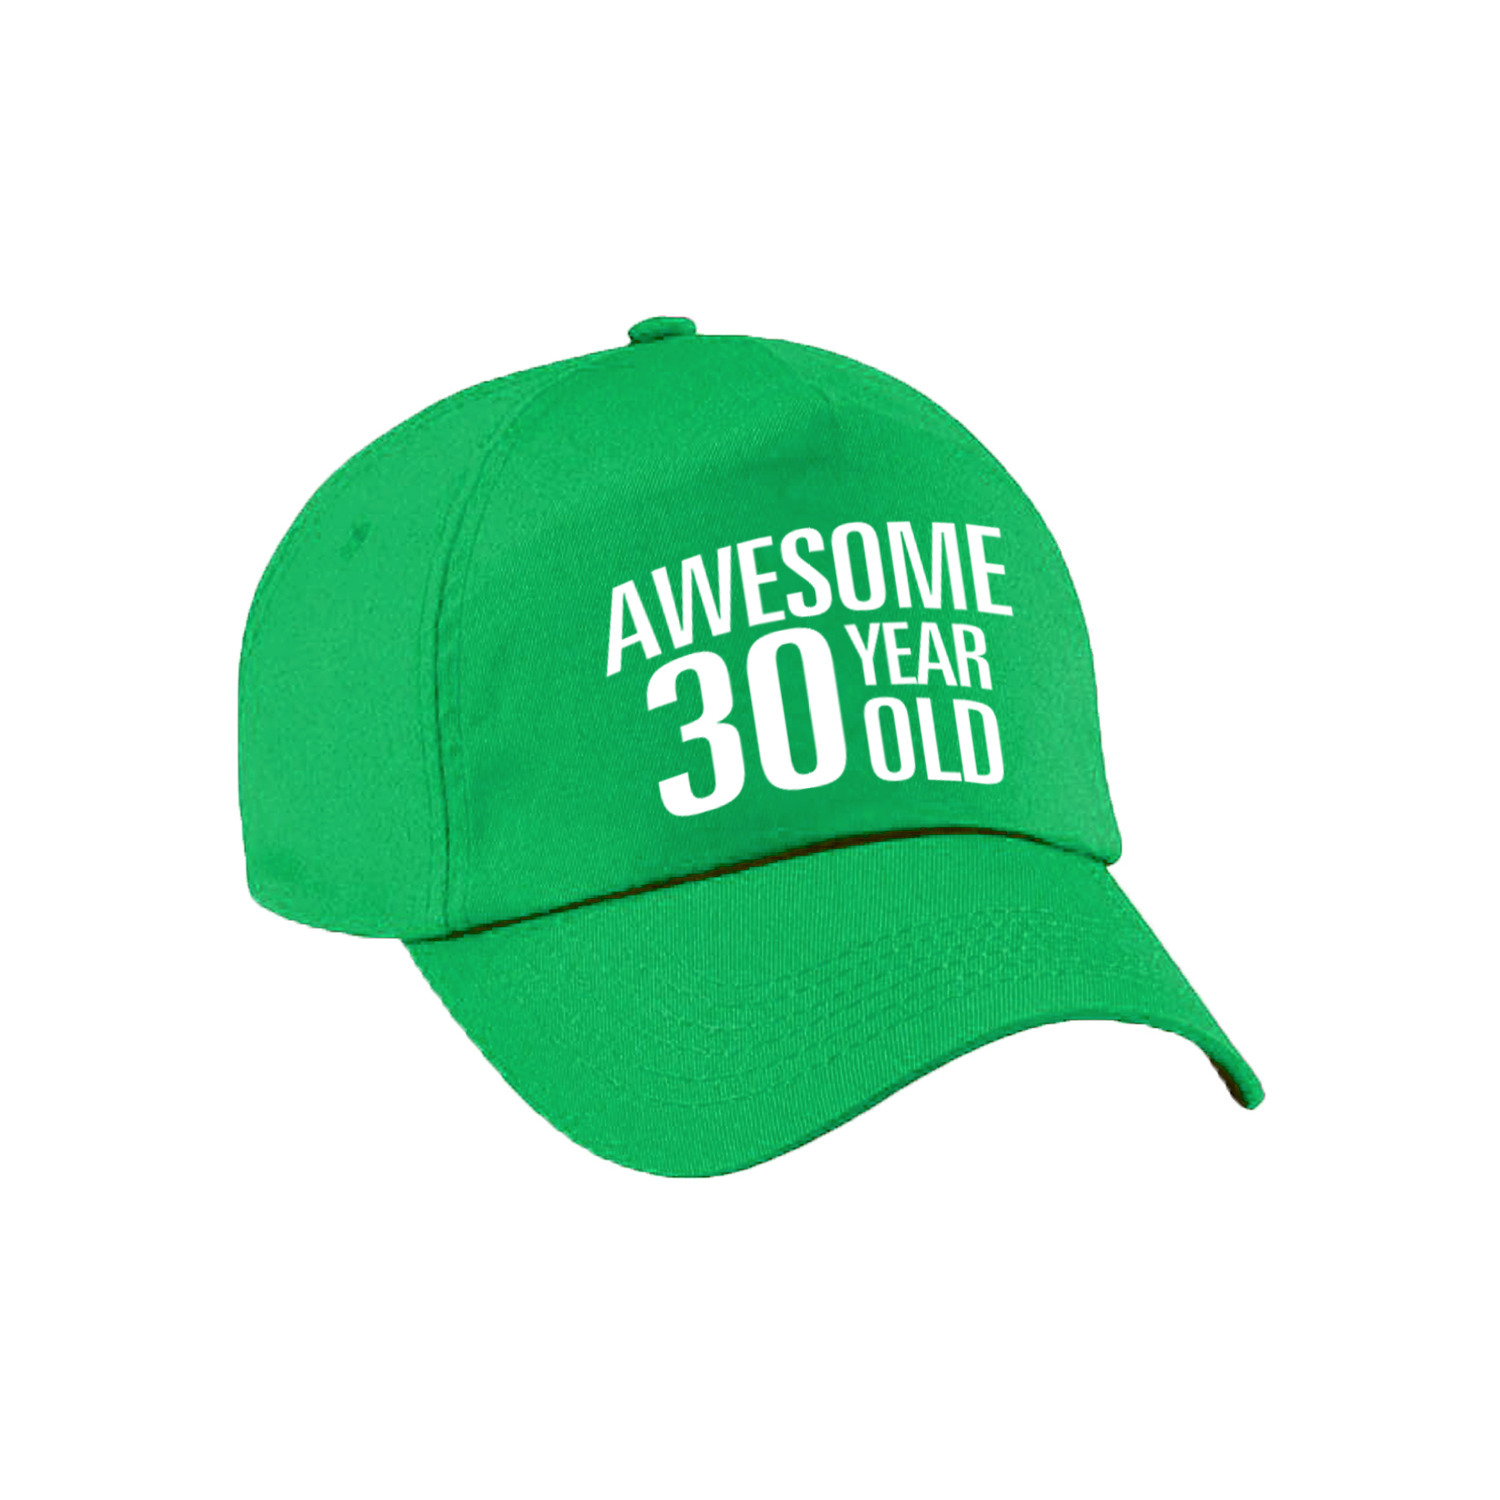 Awesome 30 year old verjaardag pet / cap groen voor dames en heren